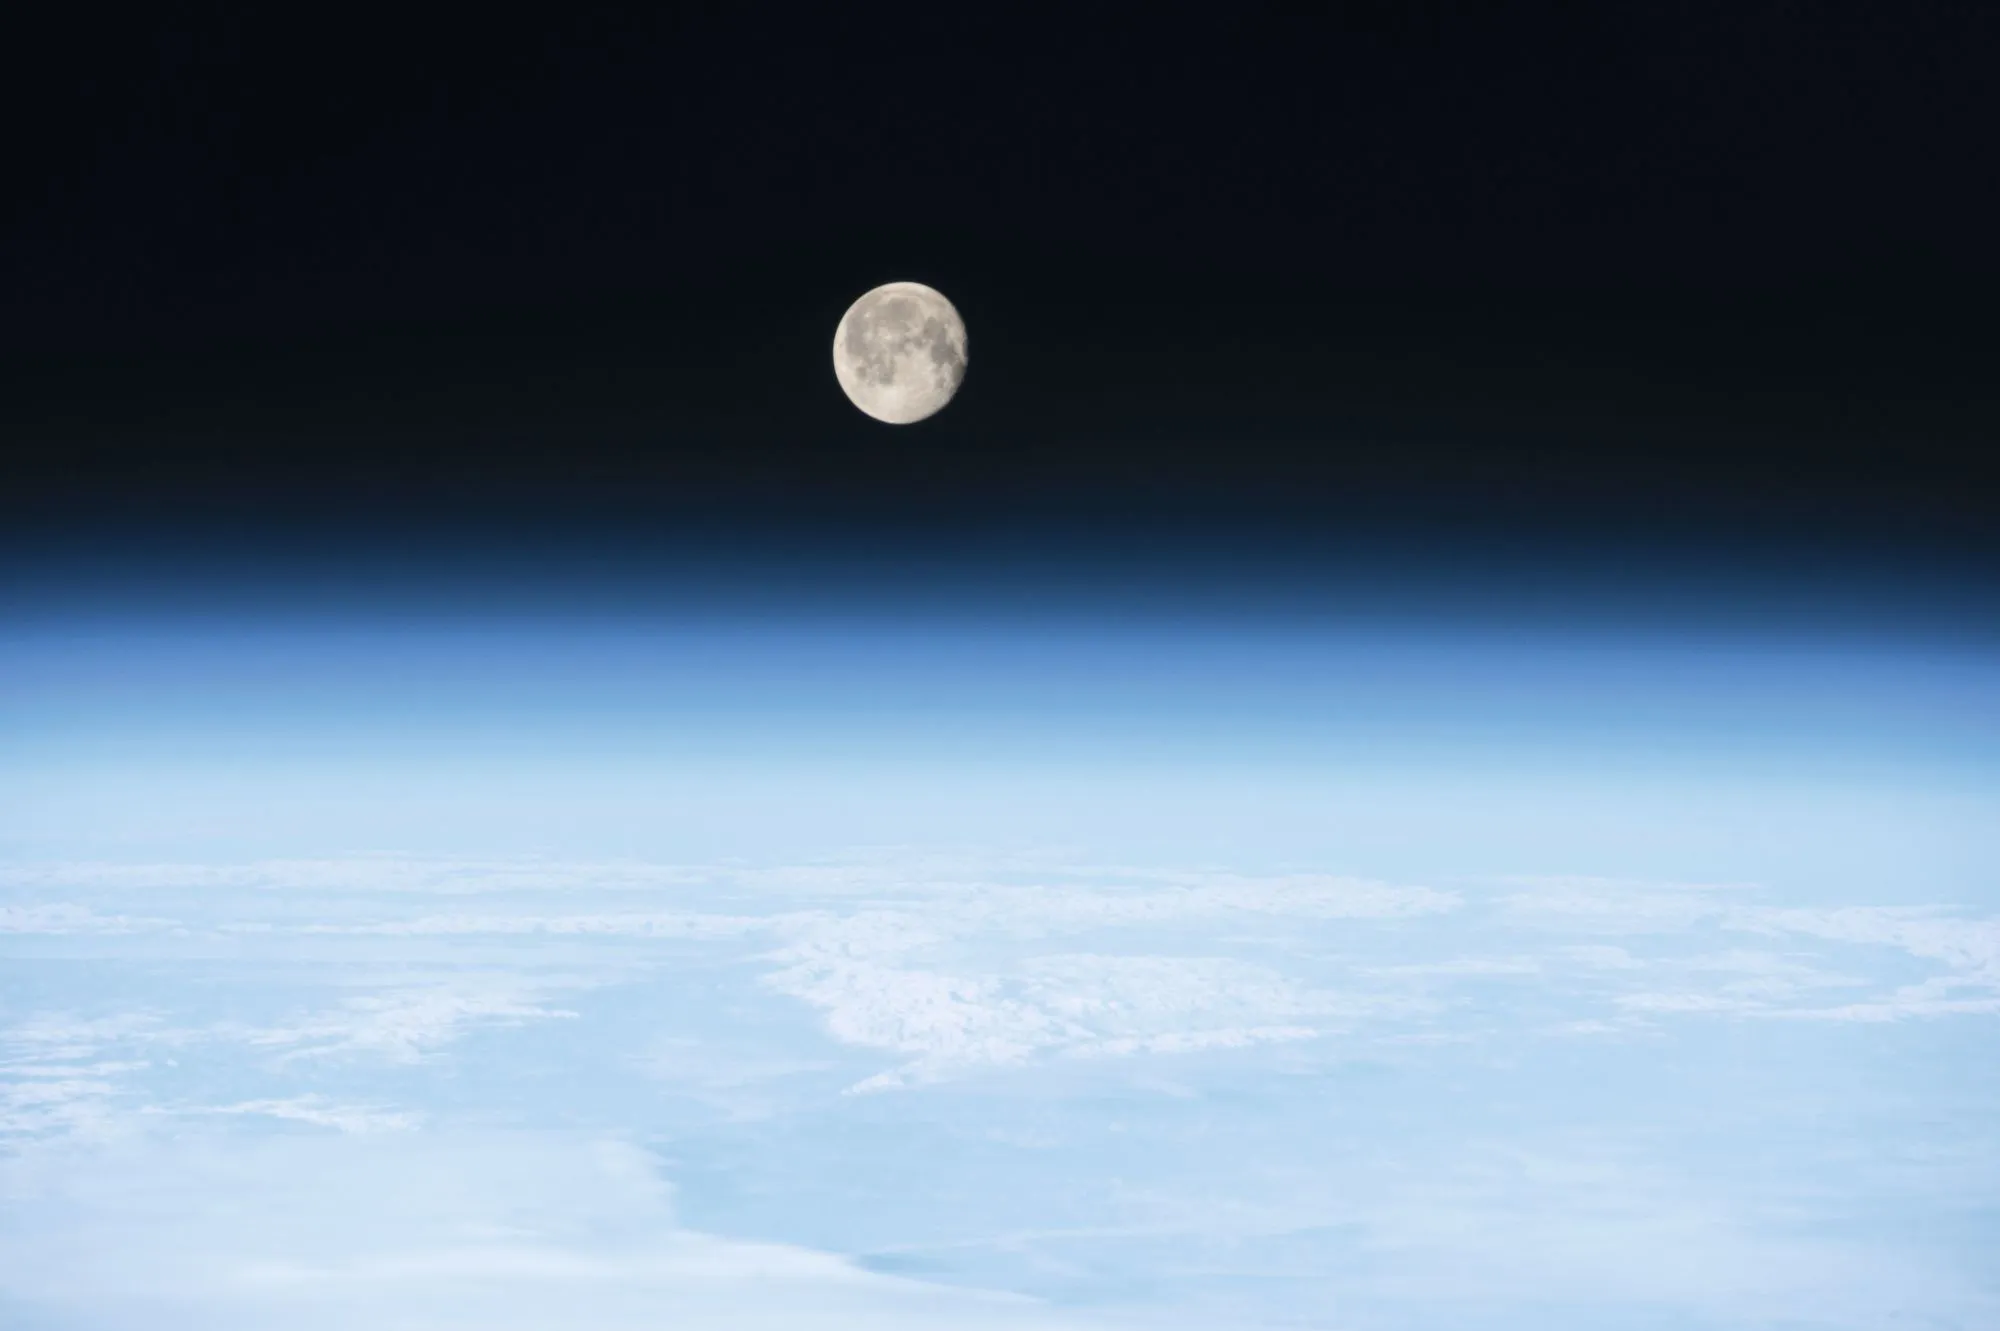 La Lune vue au-dessus de l'atmosphère terrestre